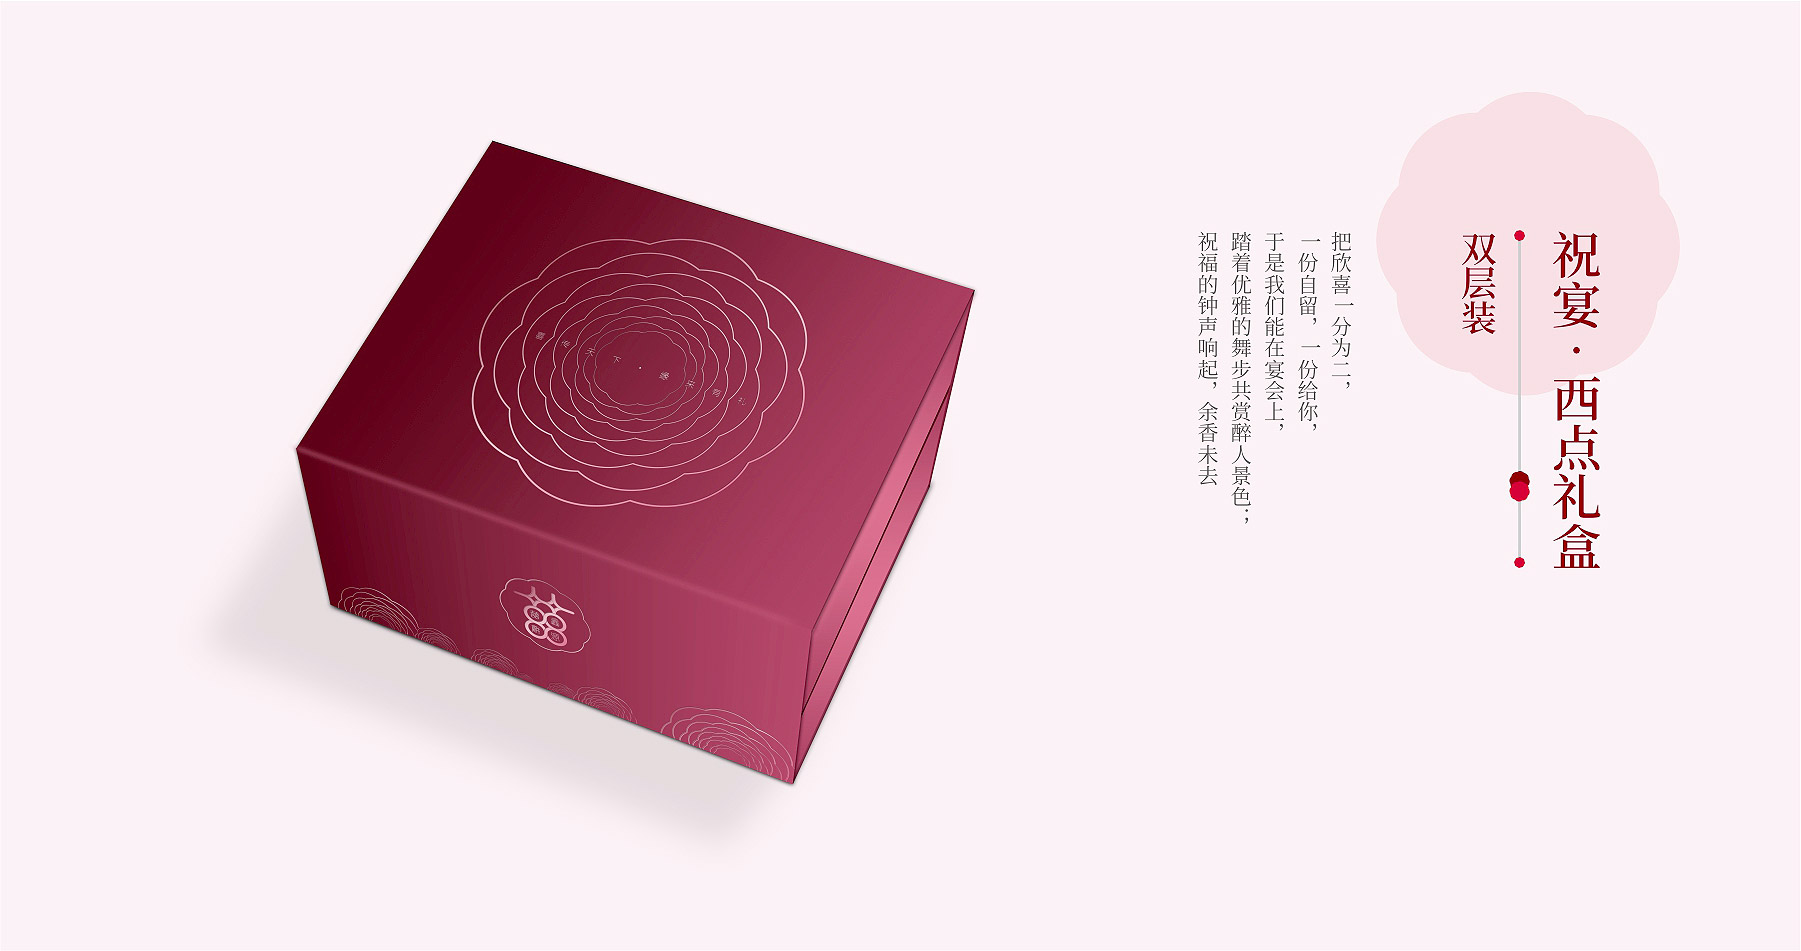 鑫源喜饼品牌全案策略设计天地盖包装设计